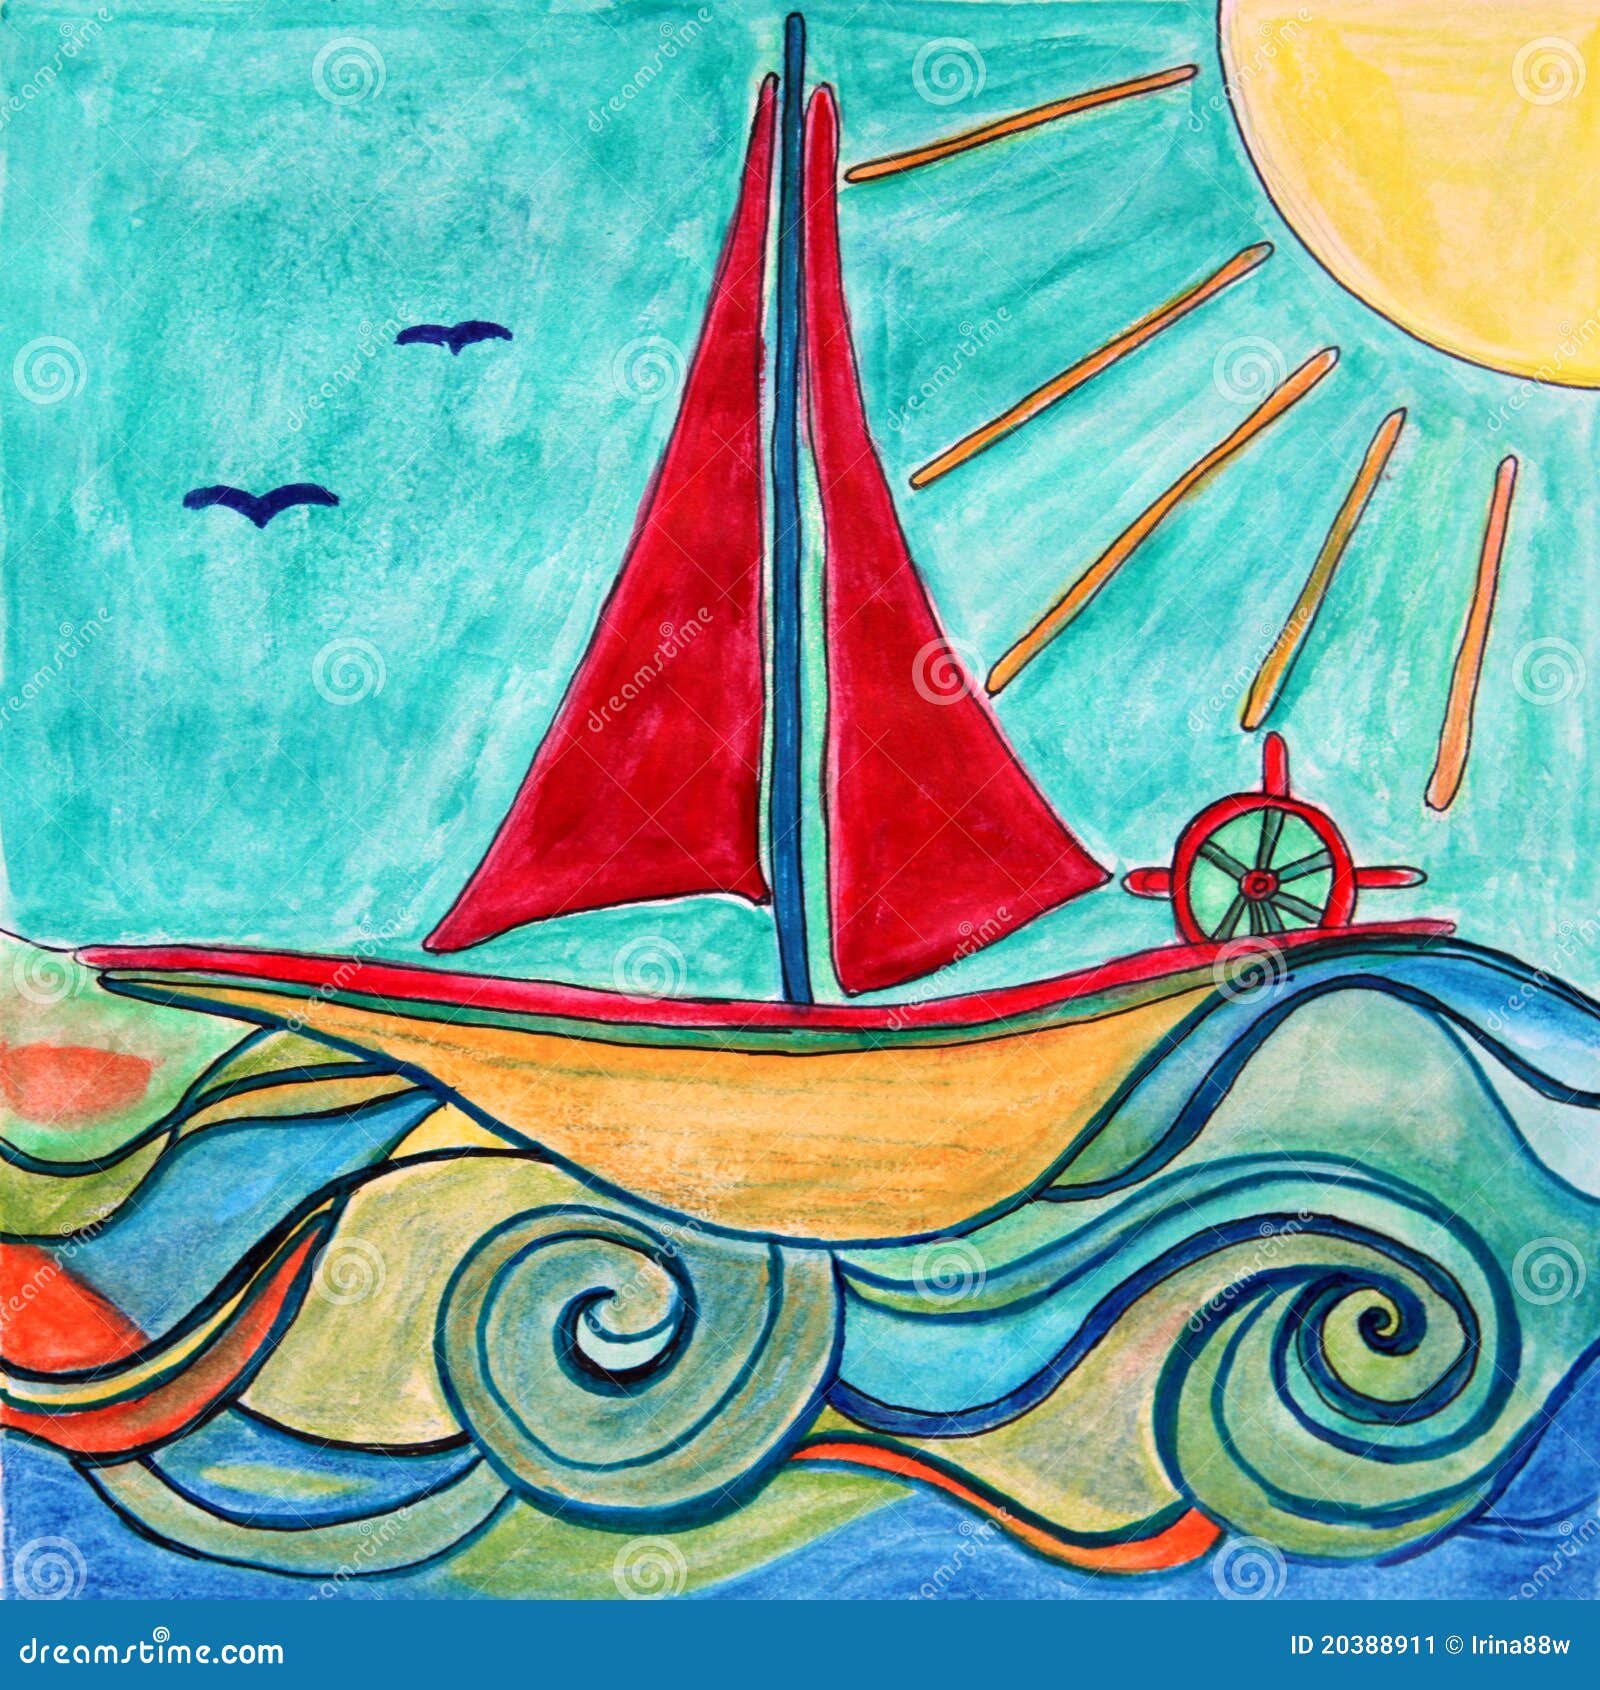 Sailing ship Boat Drawing Coloring book, sail, angle, triangle, caravel png  | PNGWing